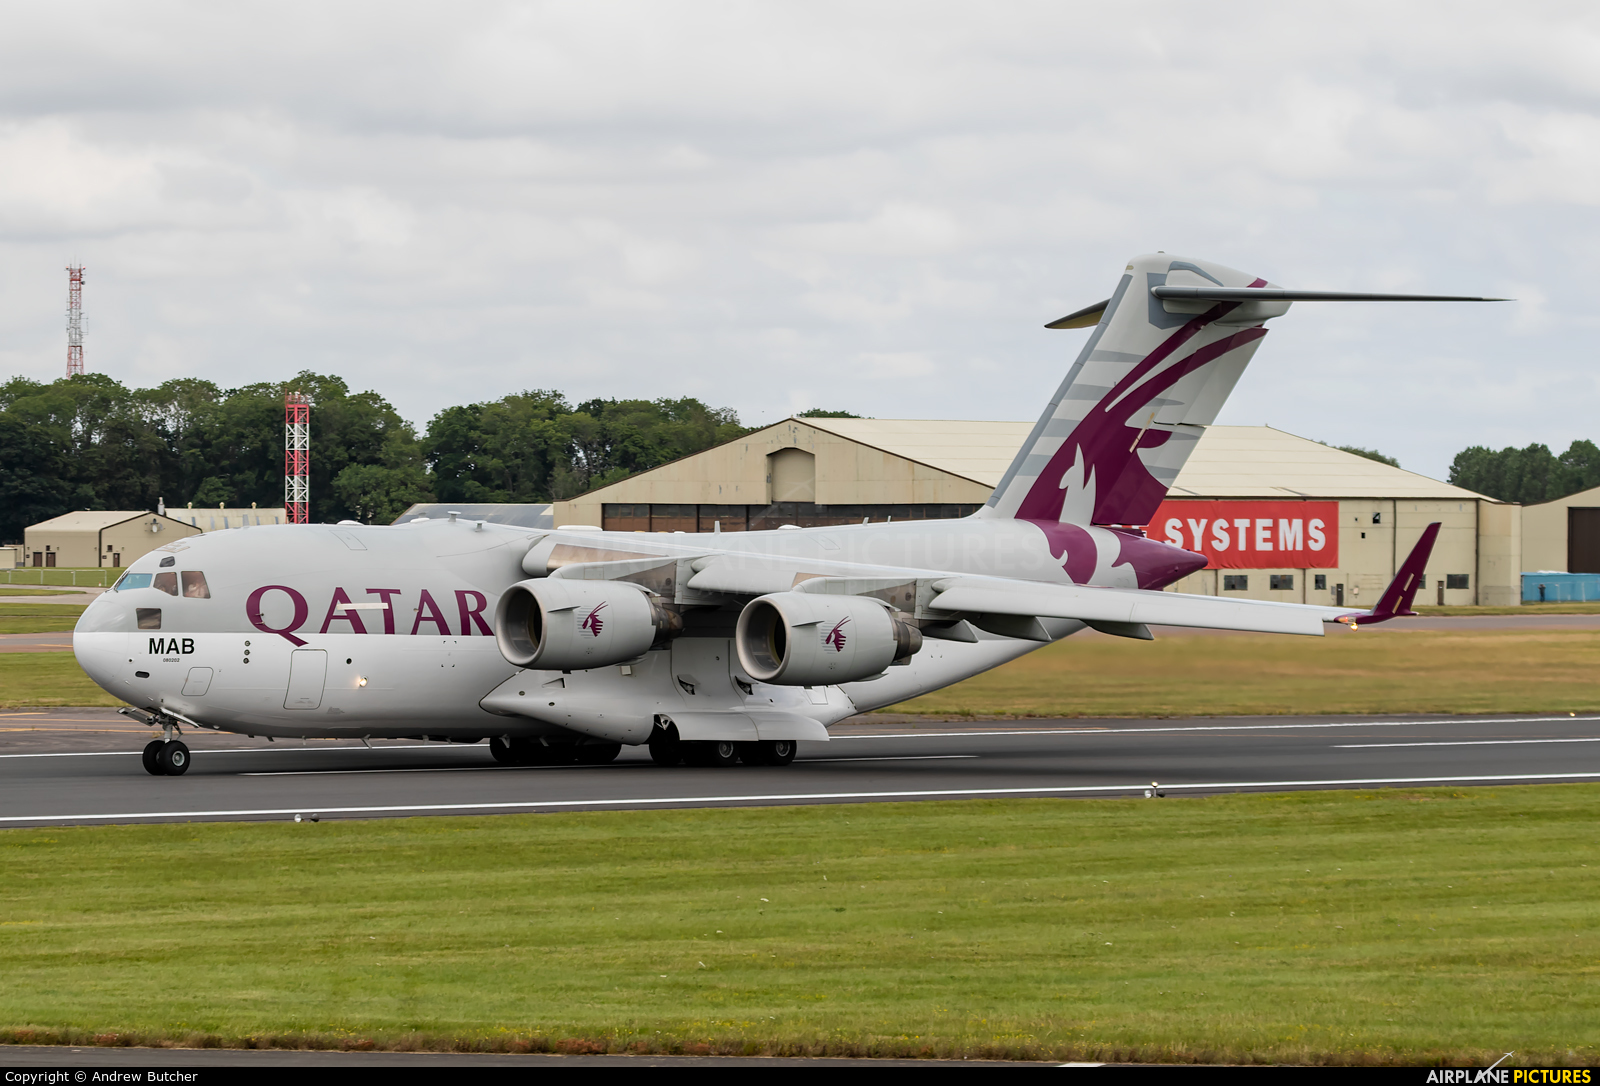 Qatar Amiri Flight A7-MAB aircraft at Fairford